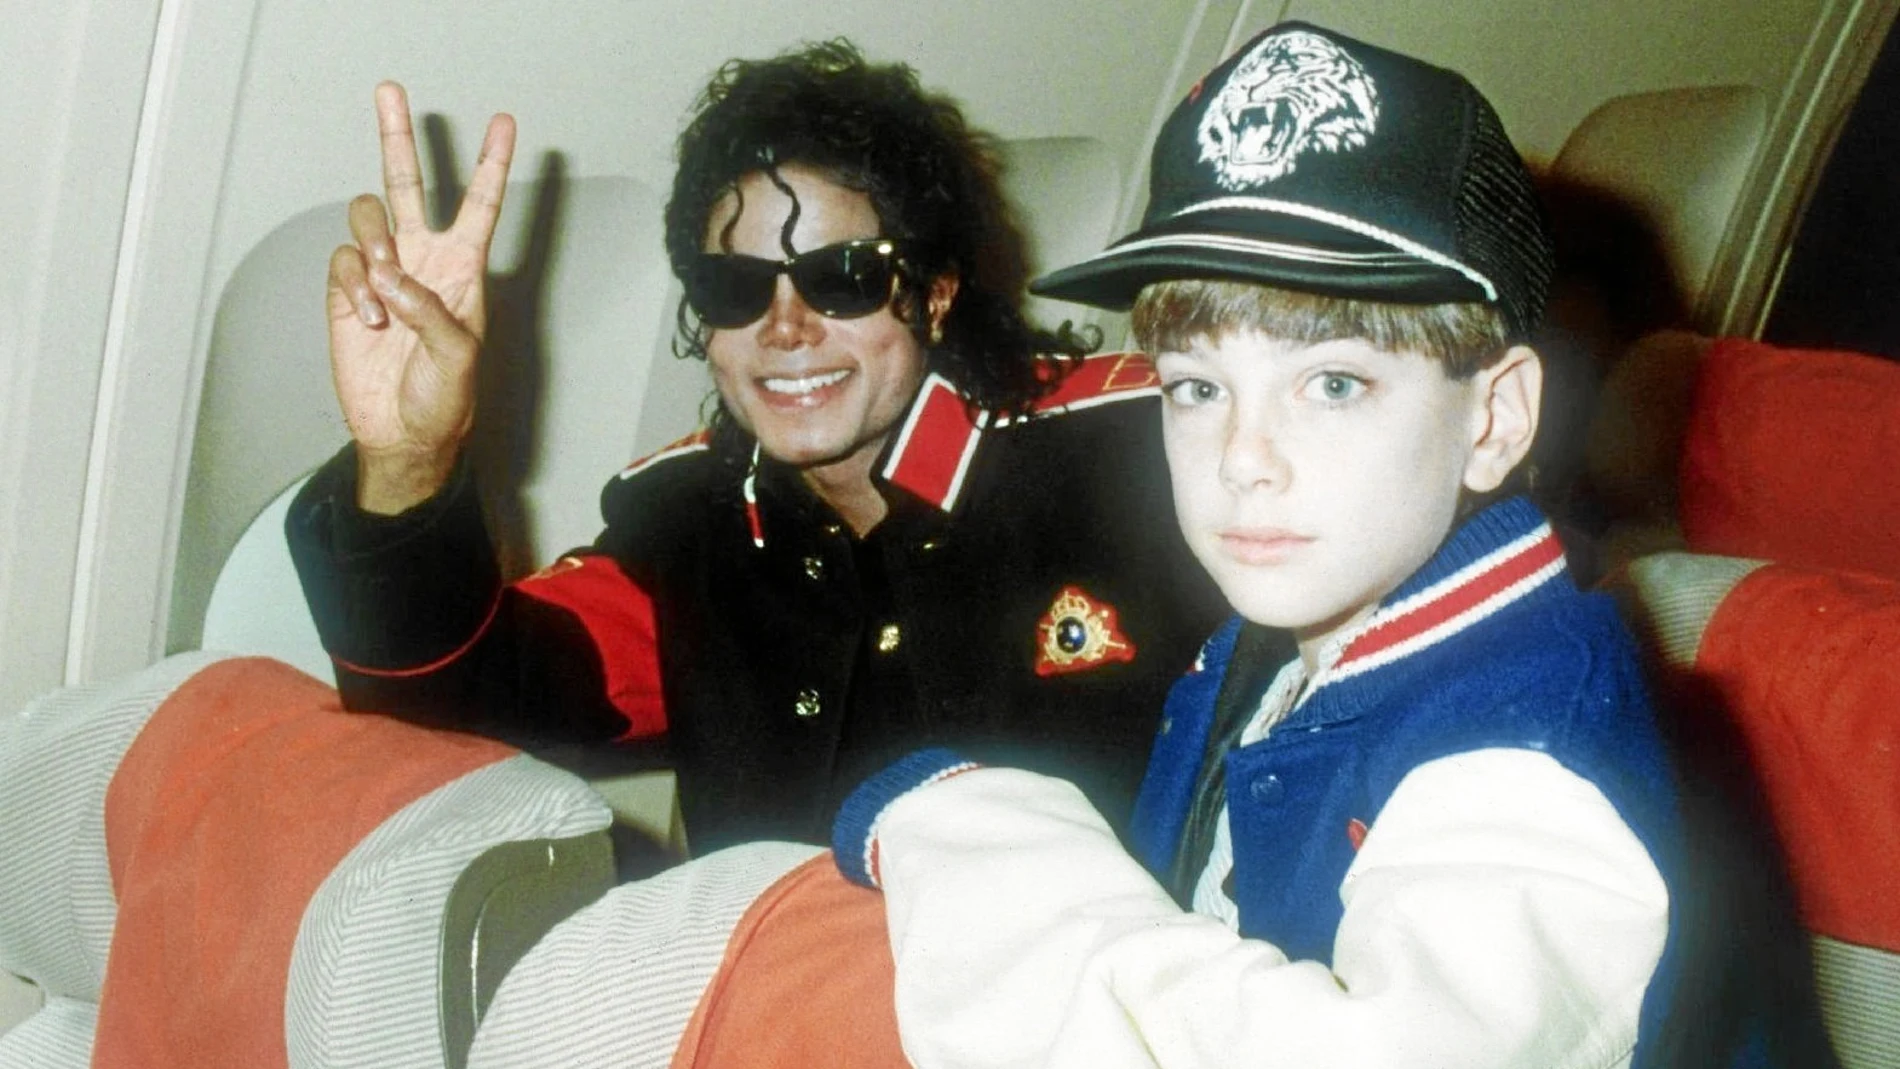 La relación de Michael Jackson con los niños siempre estuvo en el punto de mira. En la imagen, el cantante junto a Jimmy Safechuck, quien ha confesado que fue abusado